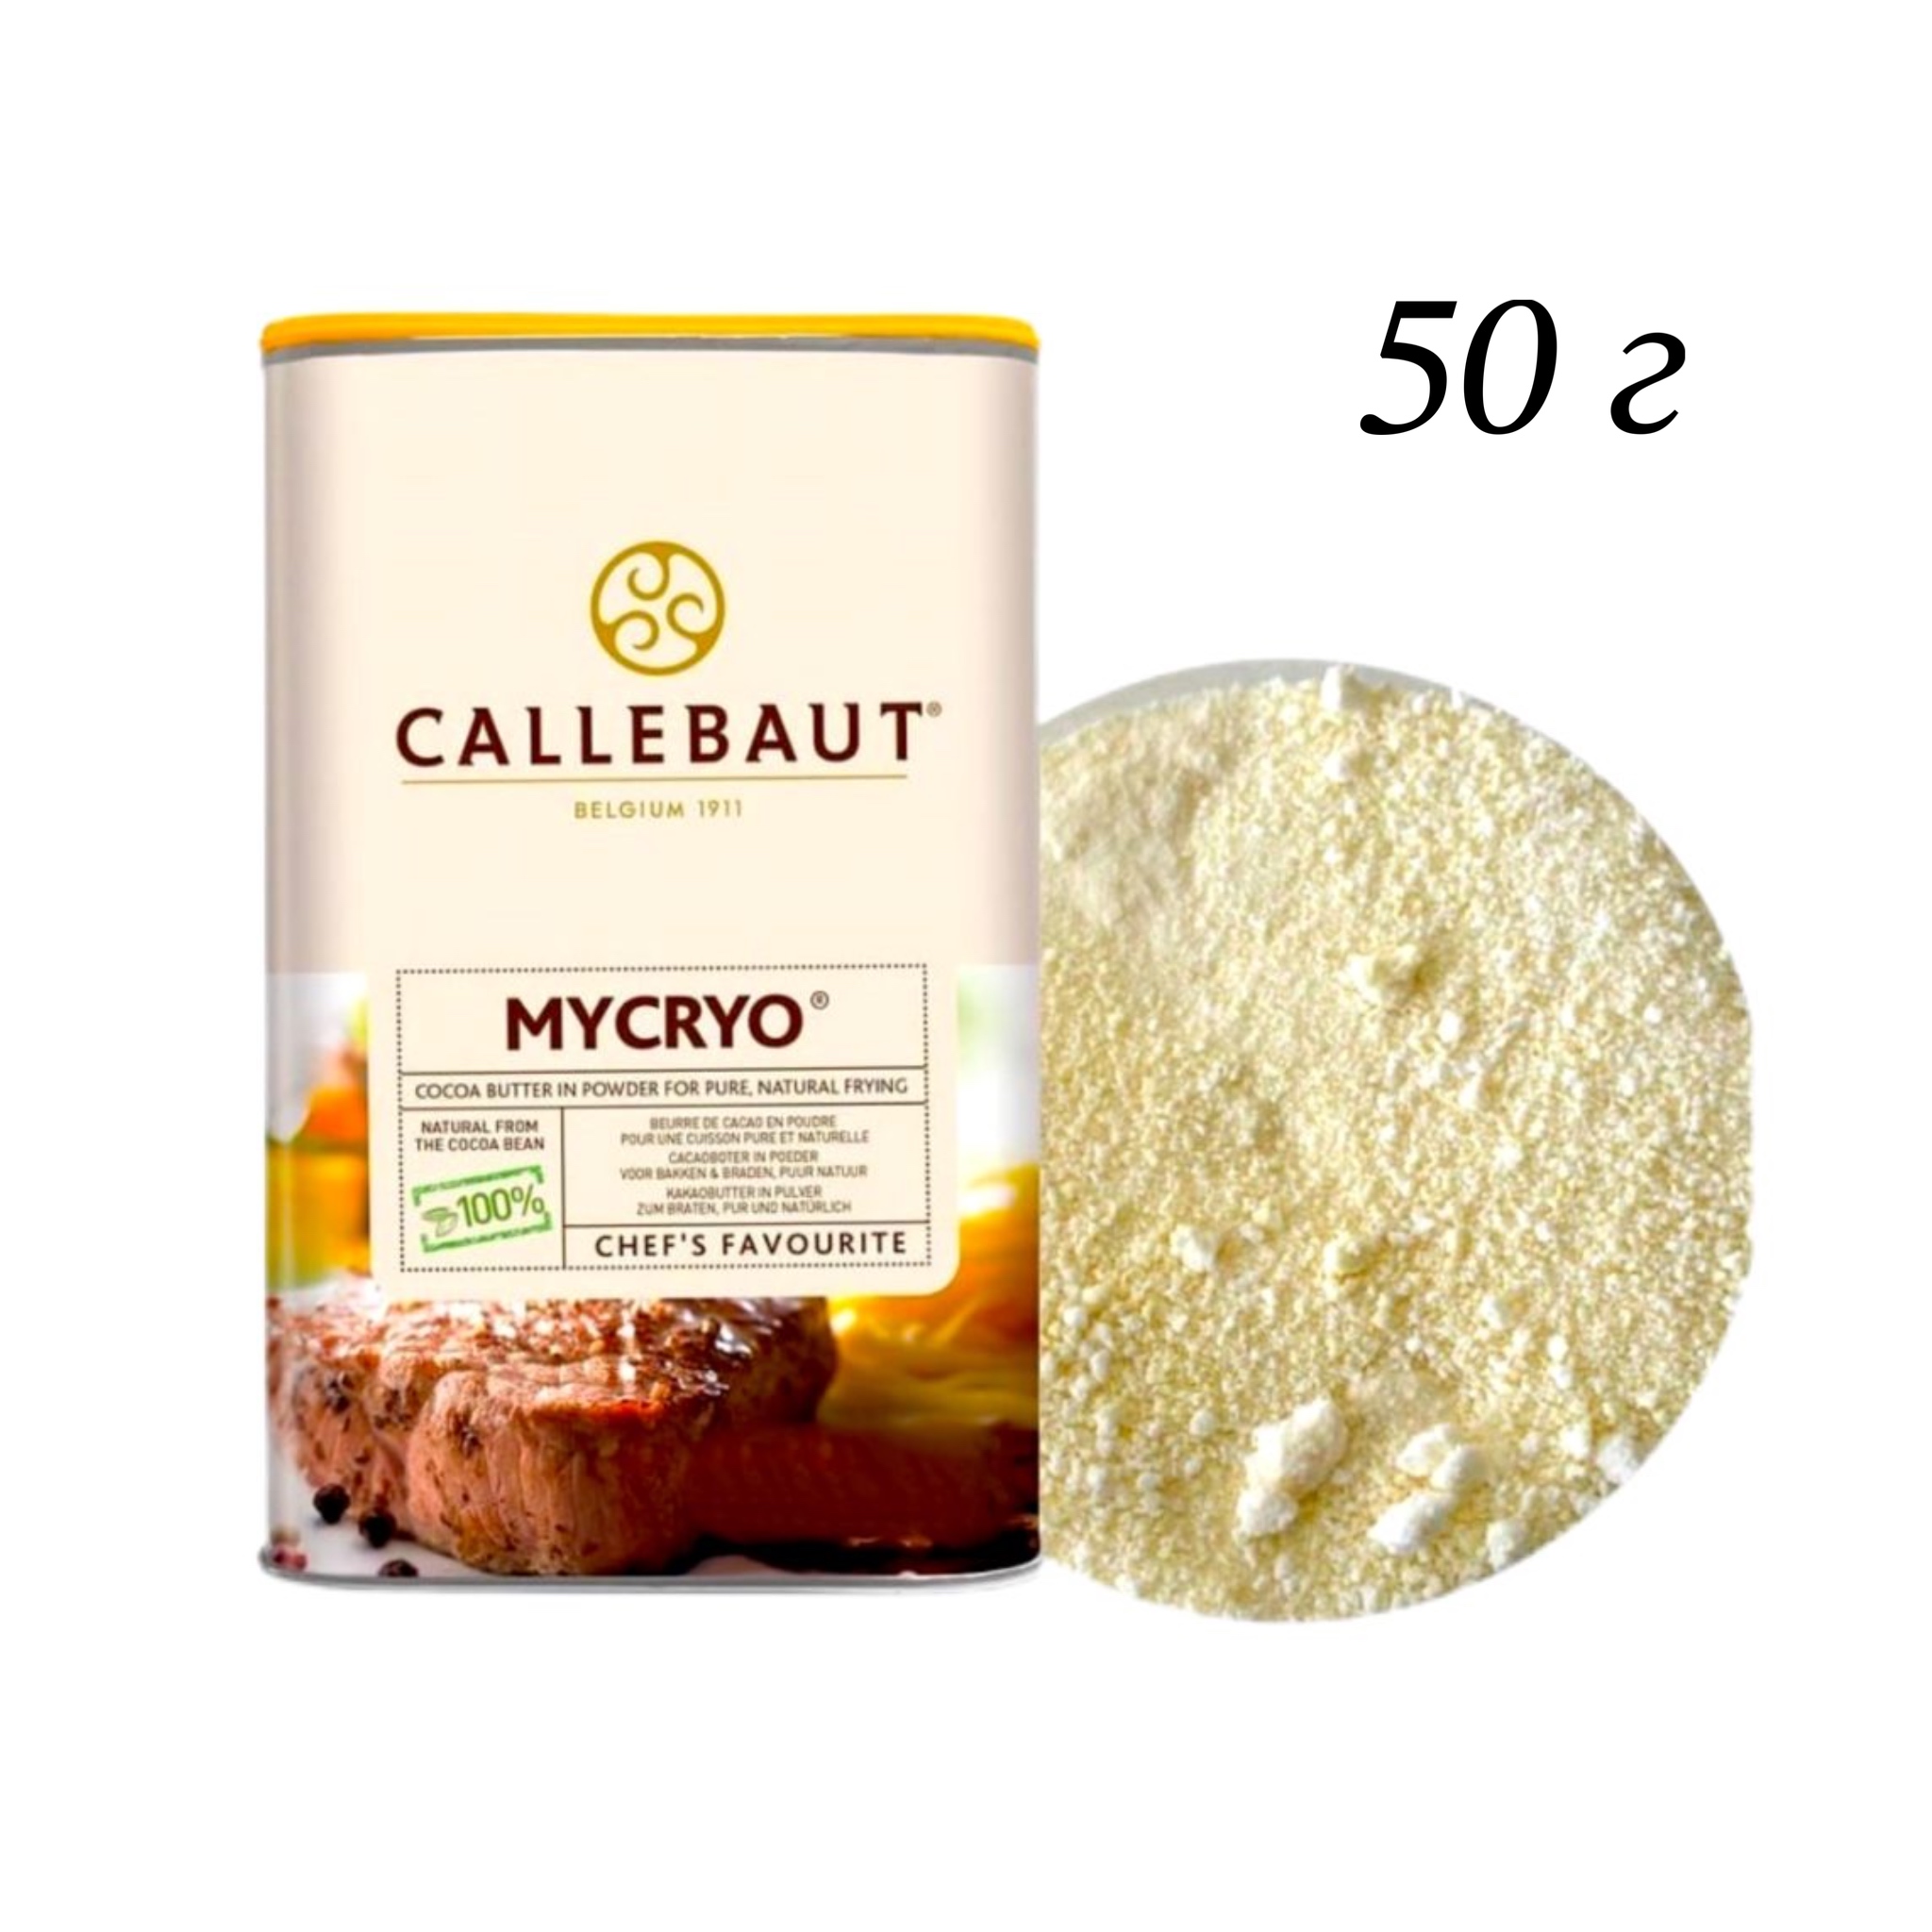 Какао масло callebaut. Какао-масло mycryo Barry Callebaut, 50 гр. Callebaut mycryo 600 гр. Какао-масло в порошке mycryo, Callebaut, Бельгия, 50 г. Какао-масло mycryo, 600гр*10шт, "Callebaut".